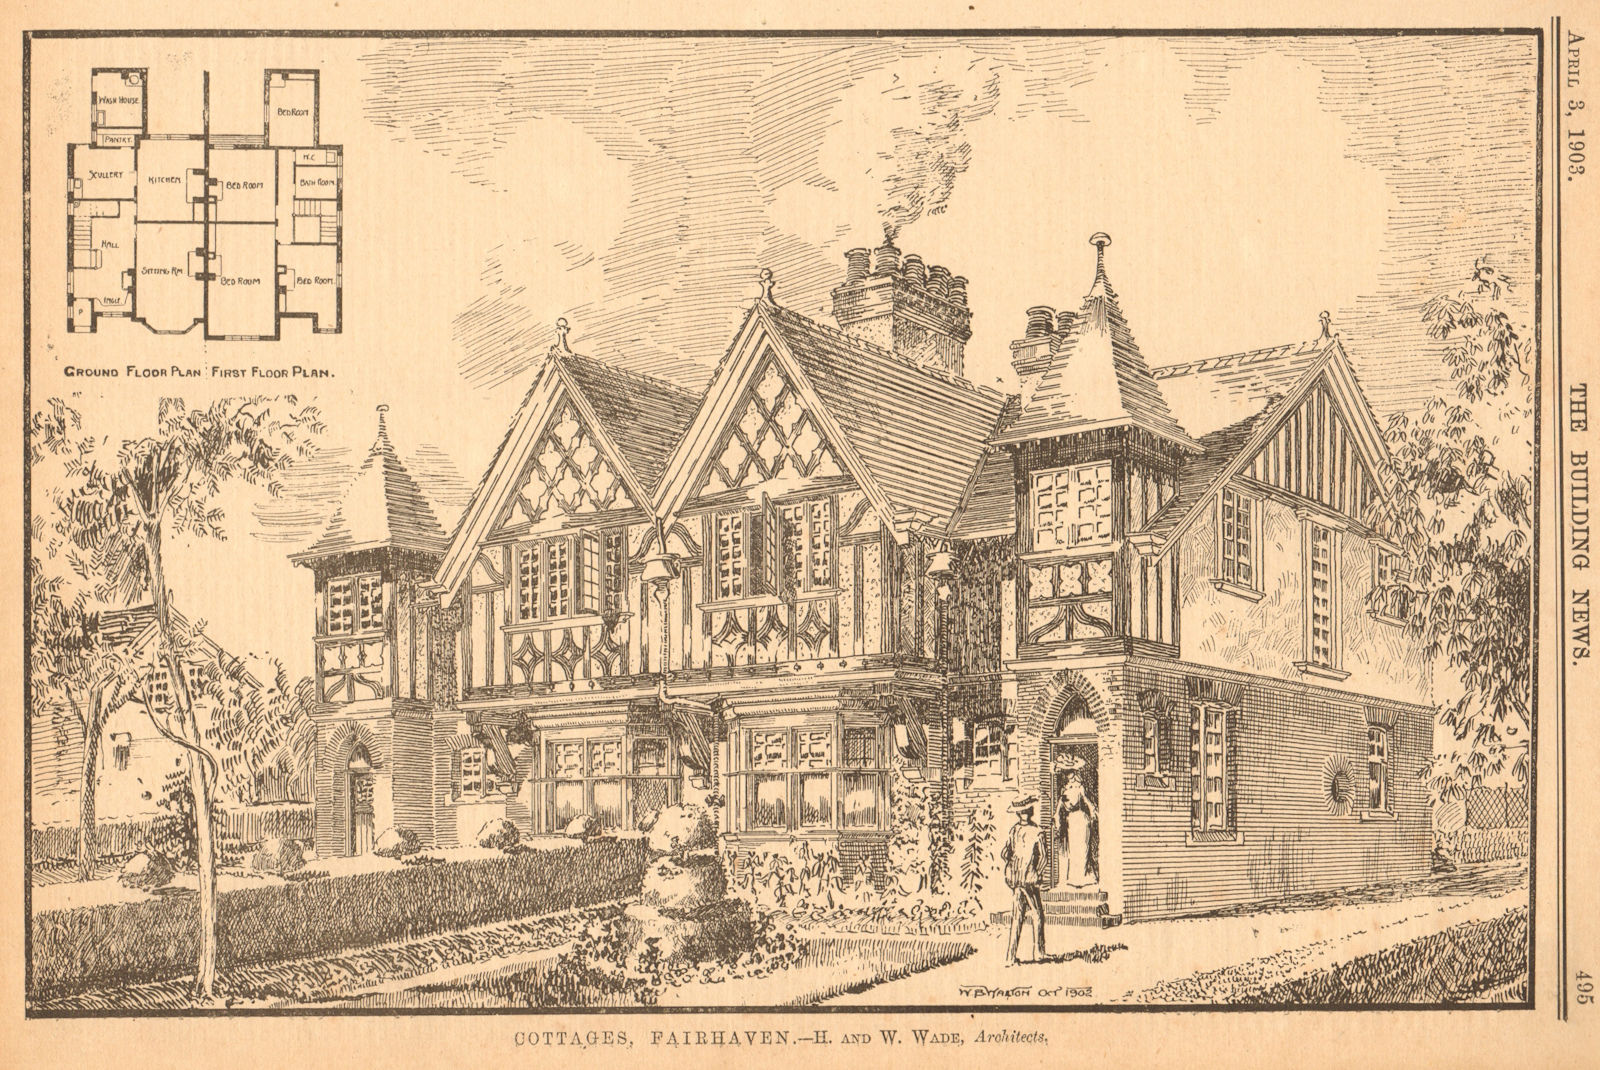 Associate Product Cottages, Fairhaven - H. & W. Wade, Architects. Floor plan. Lancashire 1903